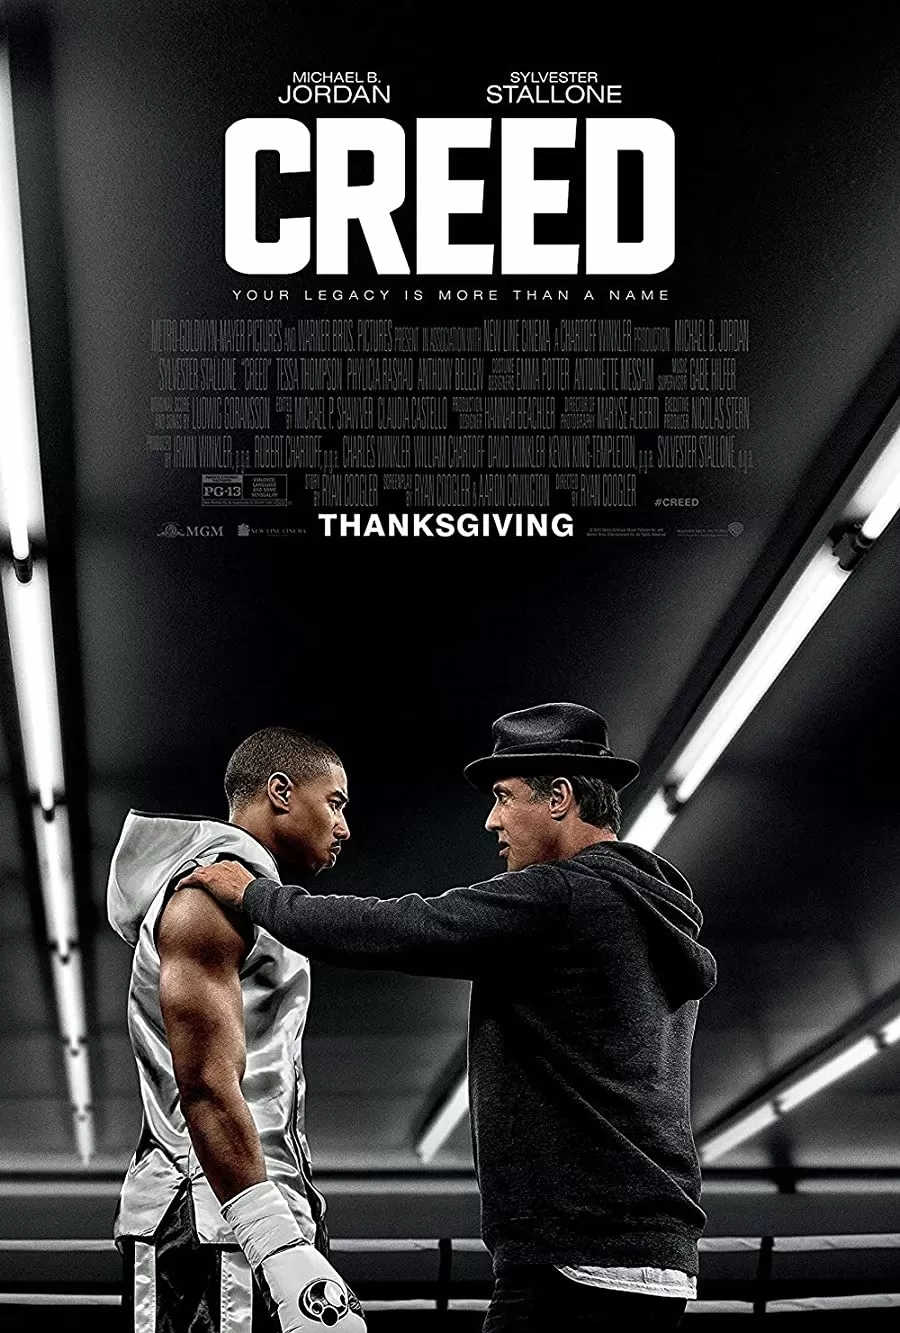 فیلم Creed 2015